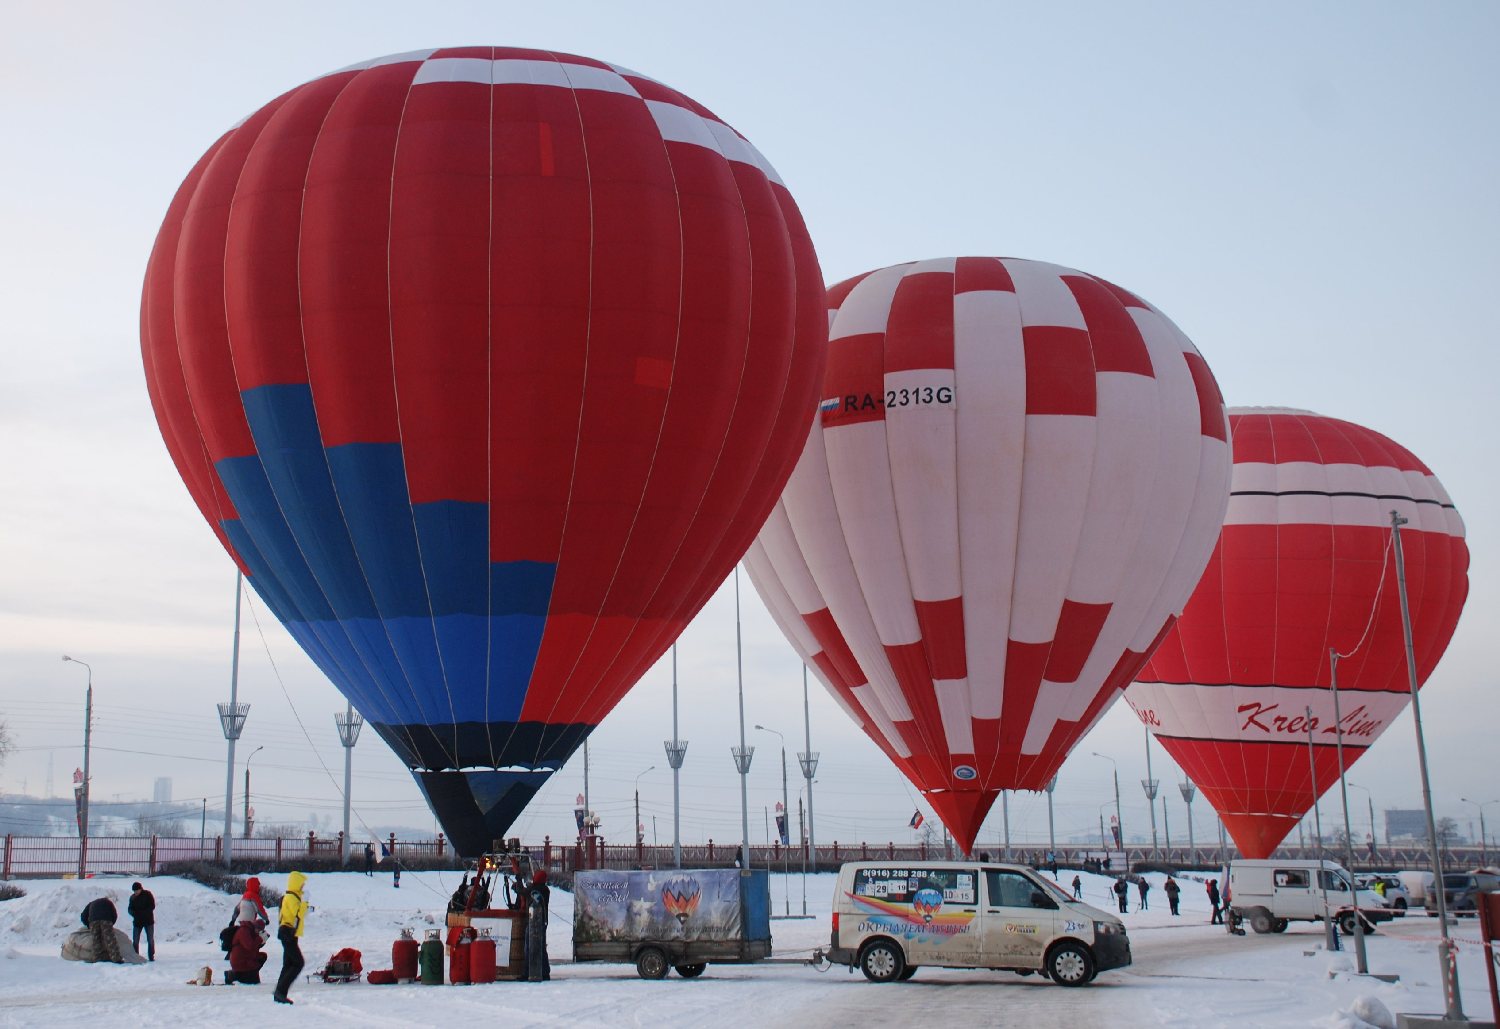 Гонка на воздушных шарах стартовала в Нижнем Новгороде (ФОТО) - фото 1